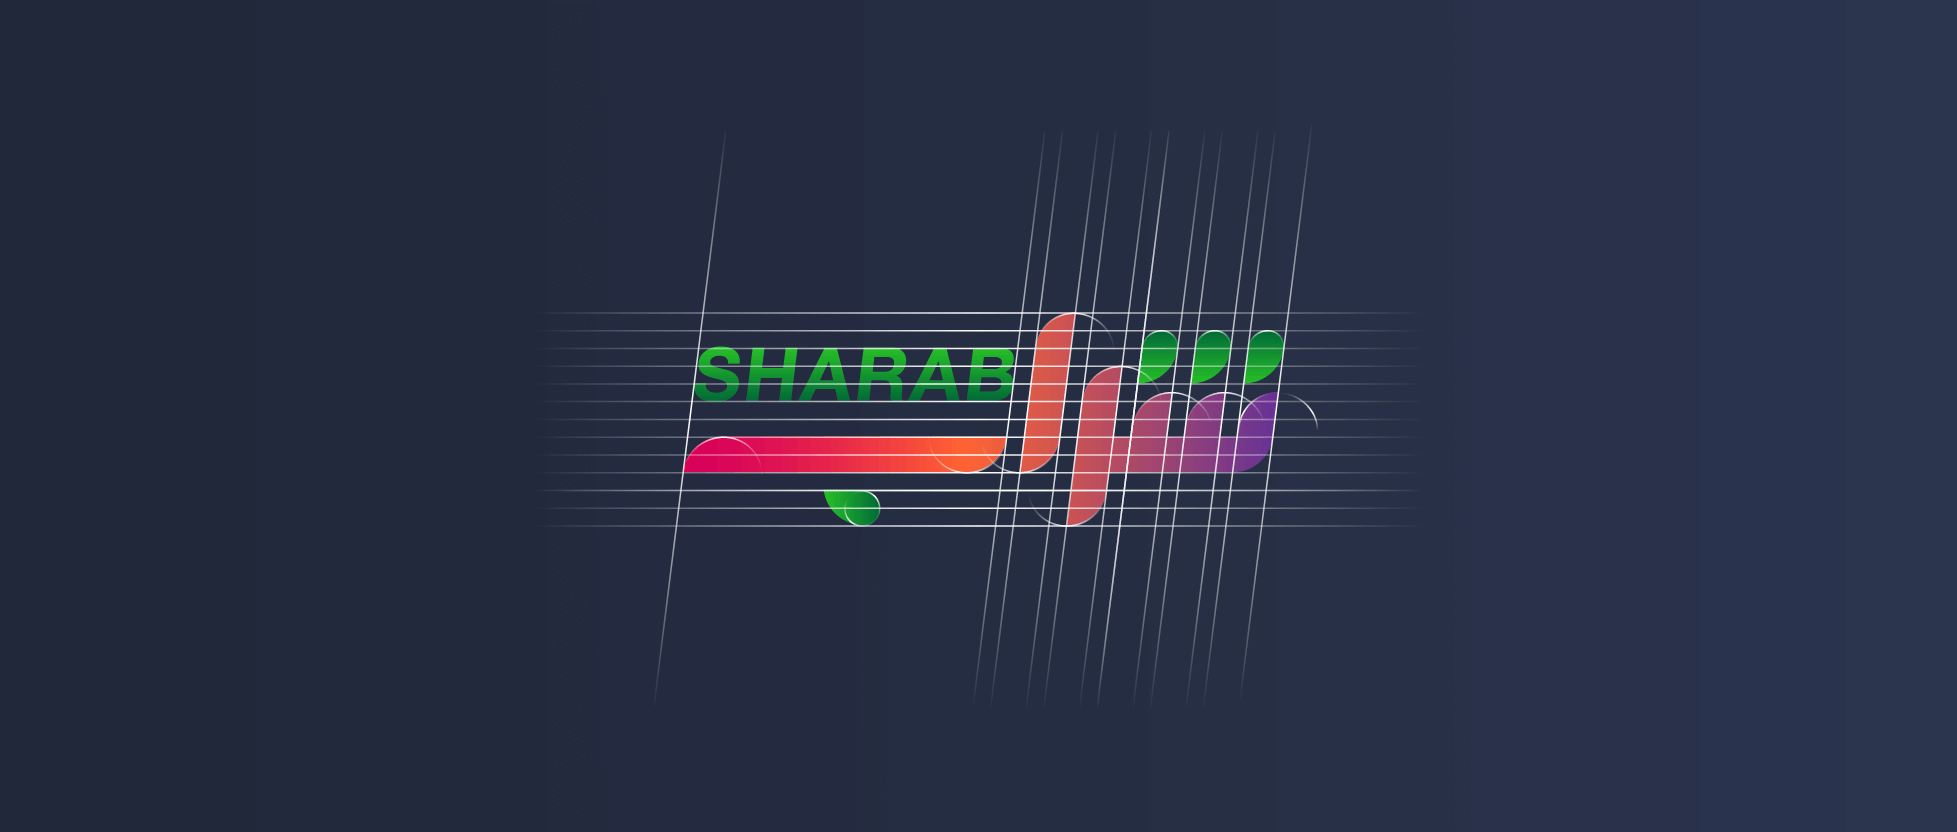 sharab_brandmark_grid